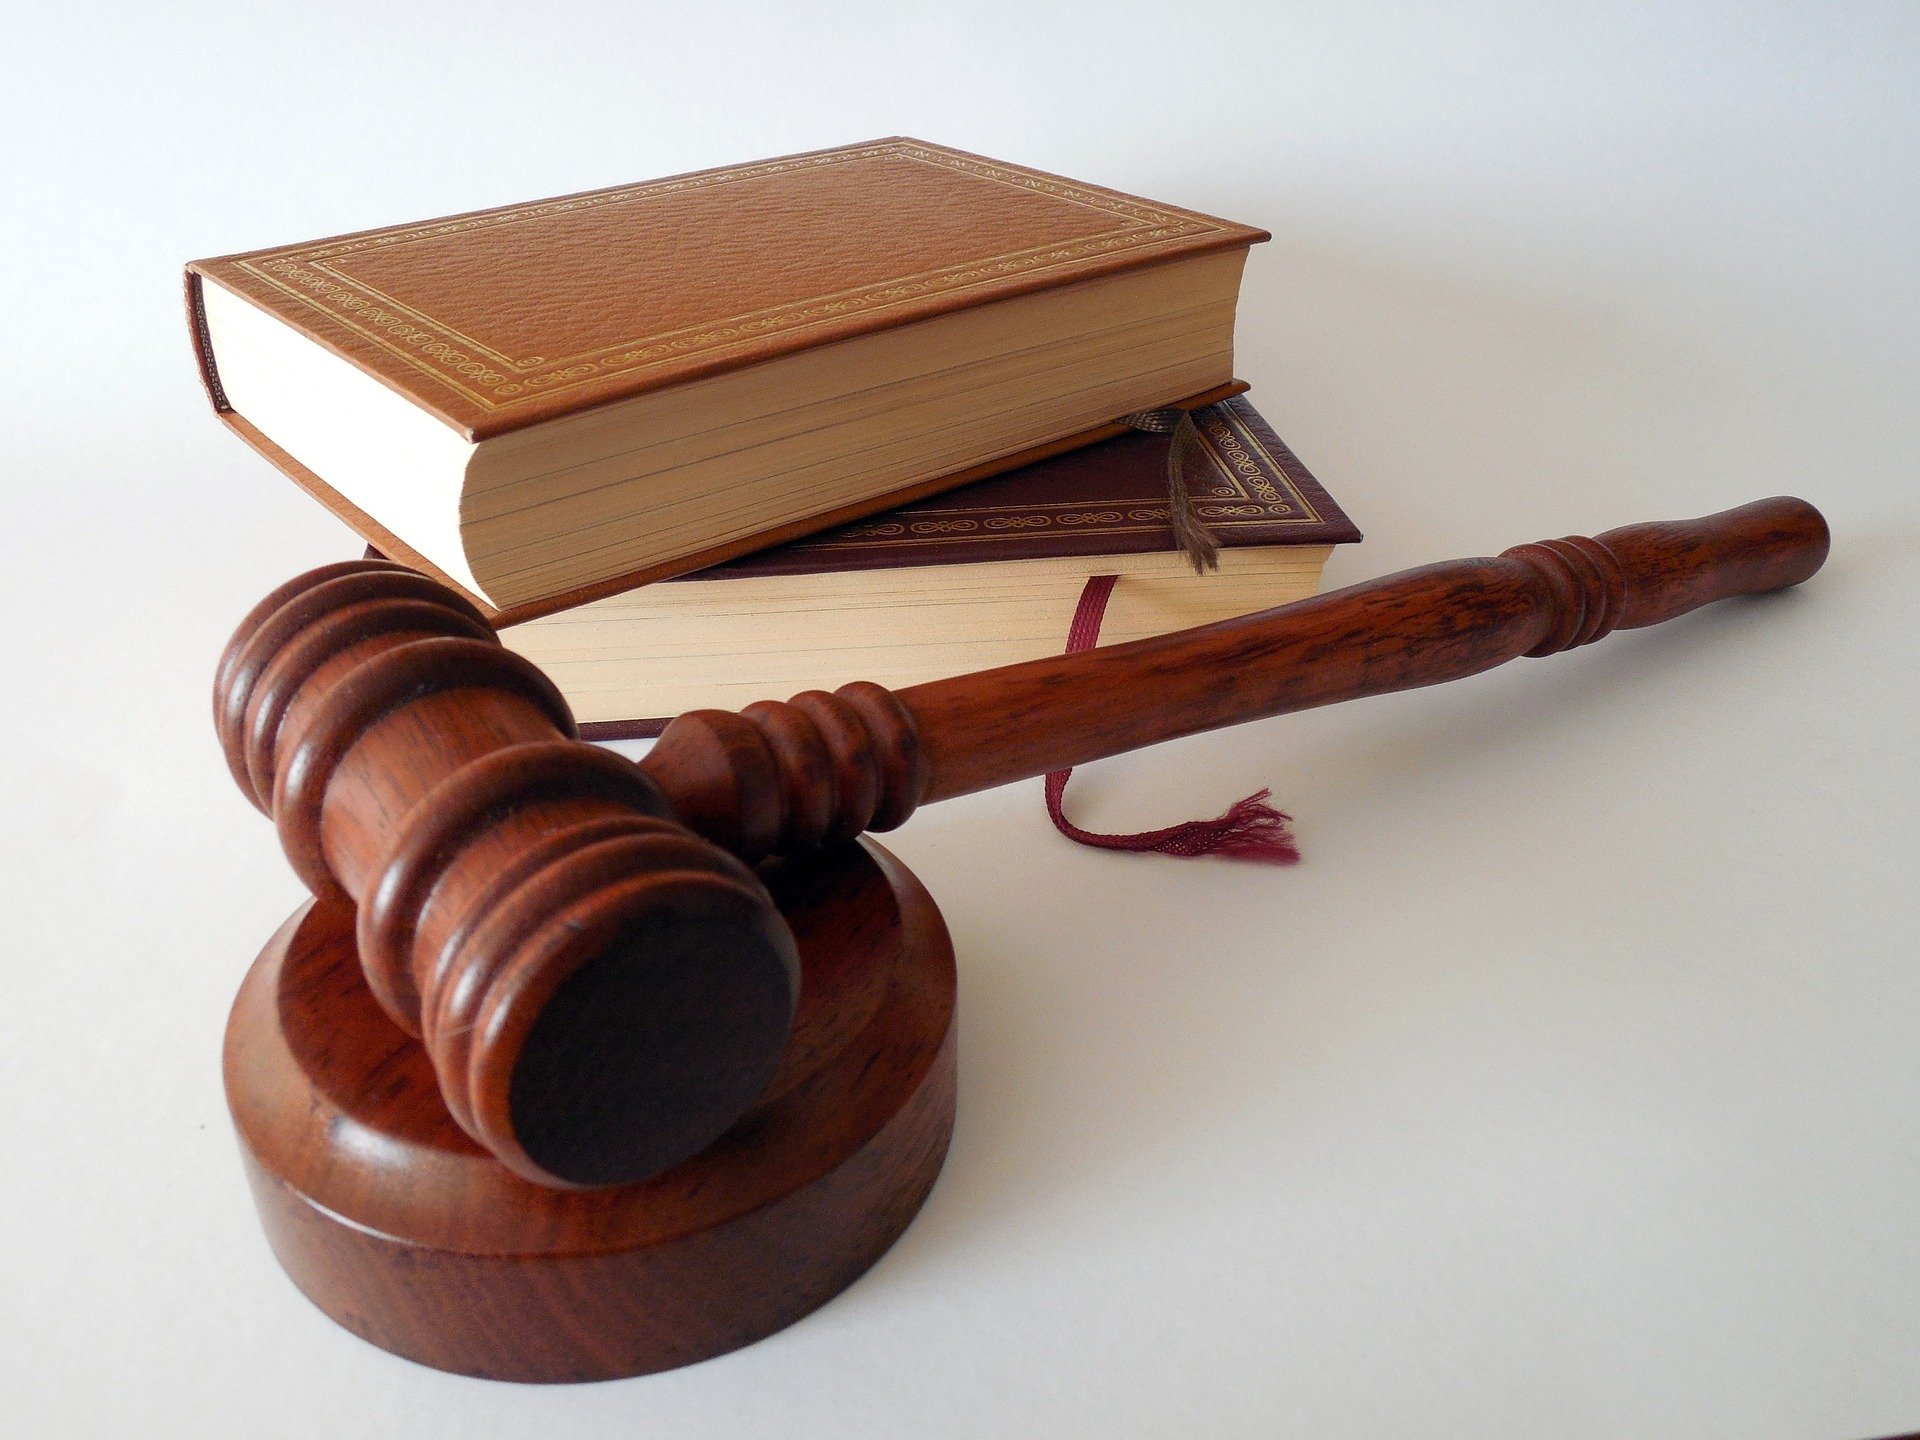 El poder Judicial afirmó que no es enemigo de nadie. Foto: Pixabay